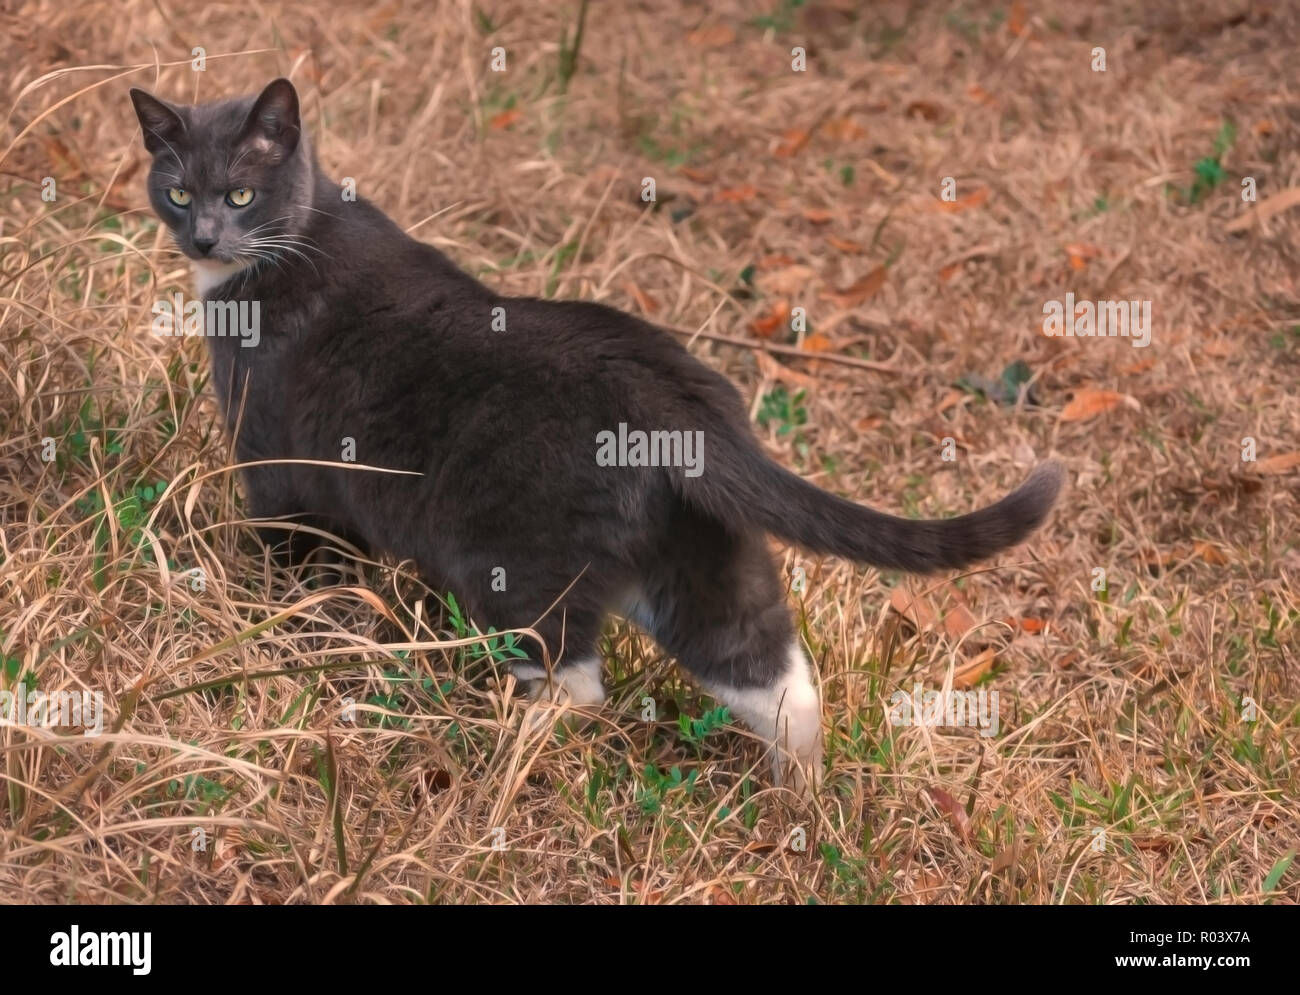 Sissy, un chat domestique à poil court, est photographié à l'extérieur dans sa cour, le 20 février 2011, à Mobile, Alabama. Banque D'Images